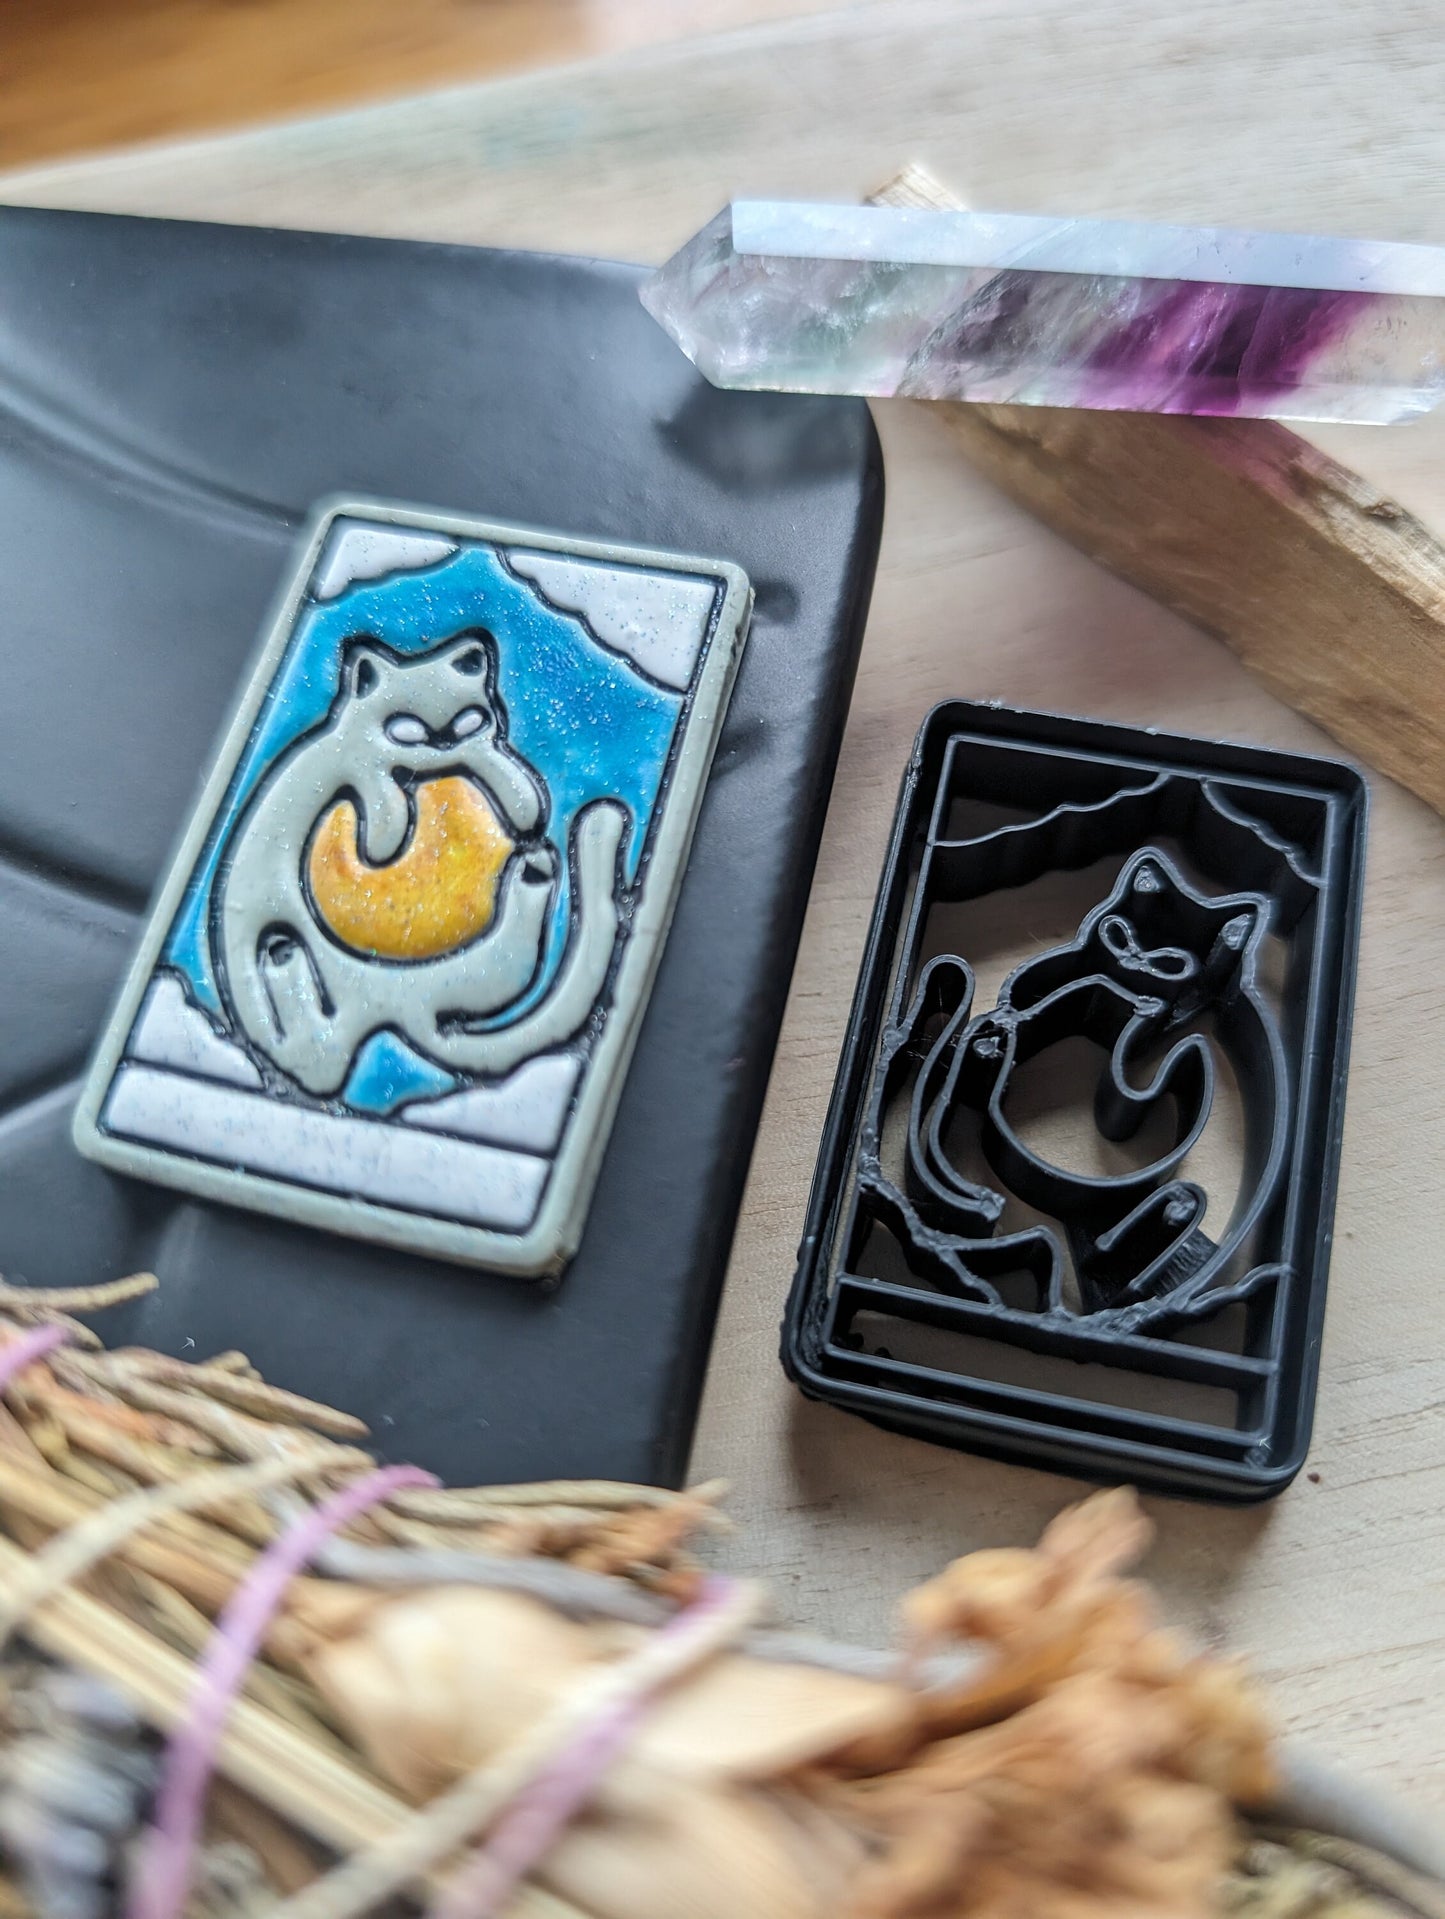 The Sun Cat Themed Tarot Card Sharp Clay Cutter